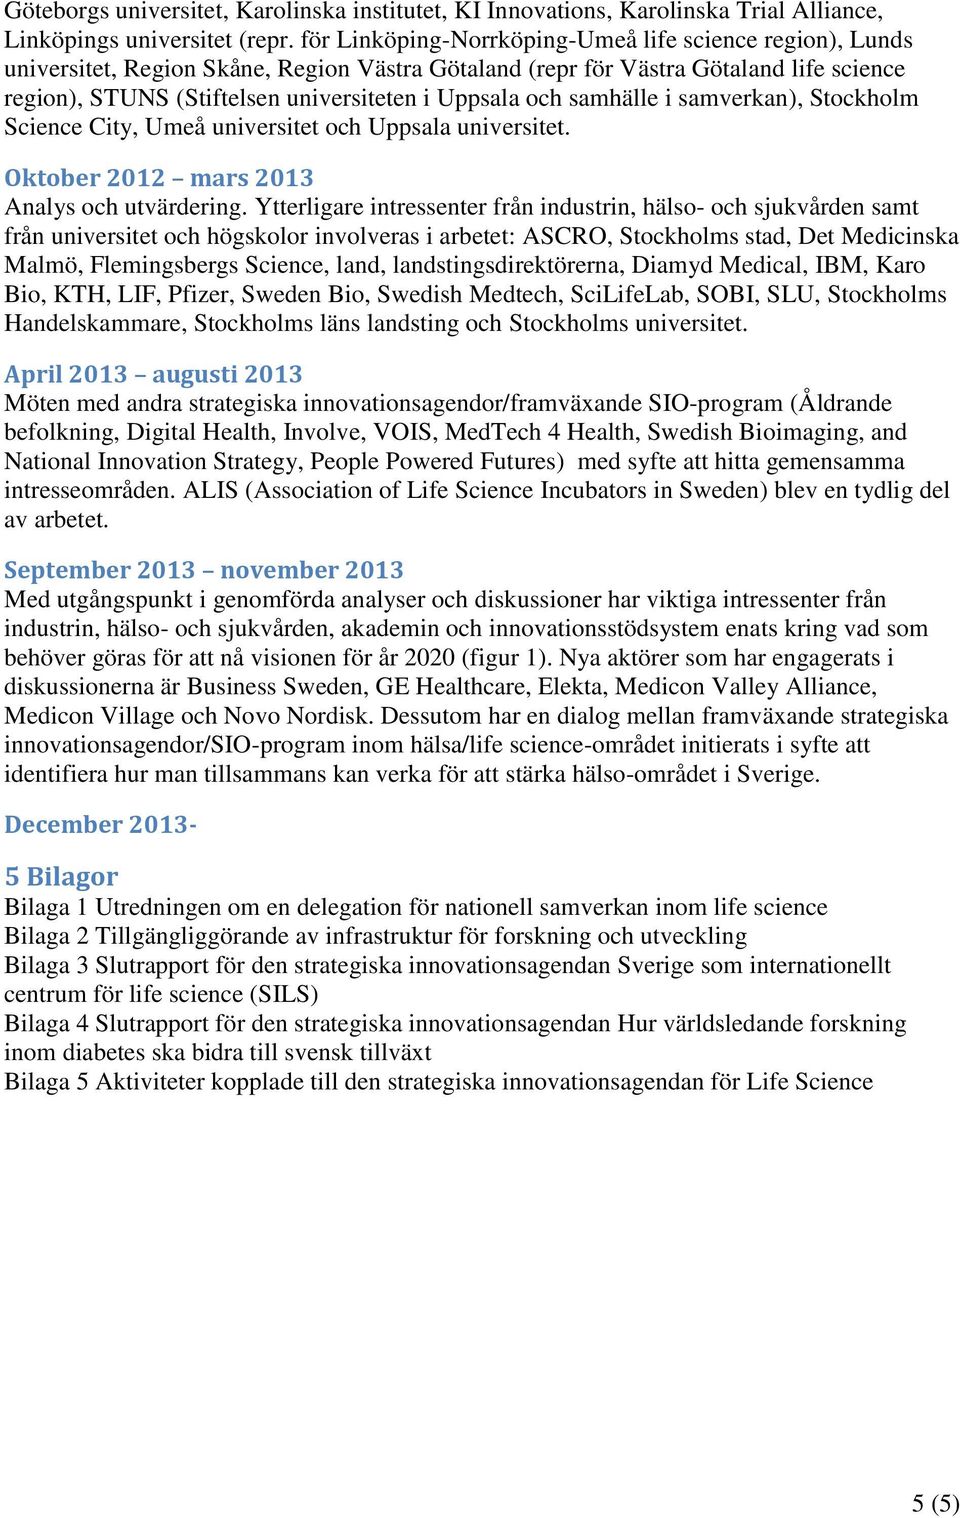 och samhälle i samverkan), Stockholm Science City, Umeå universitet och Uppsala universitet. Oktober 2012 mars 2013 Analys och utvärdering.